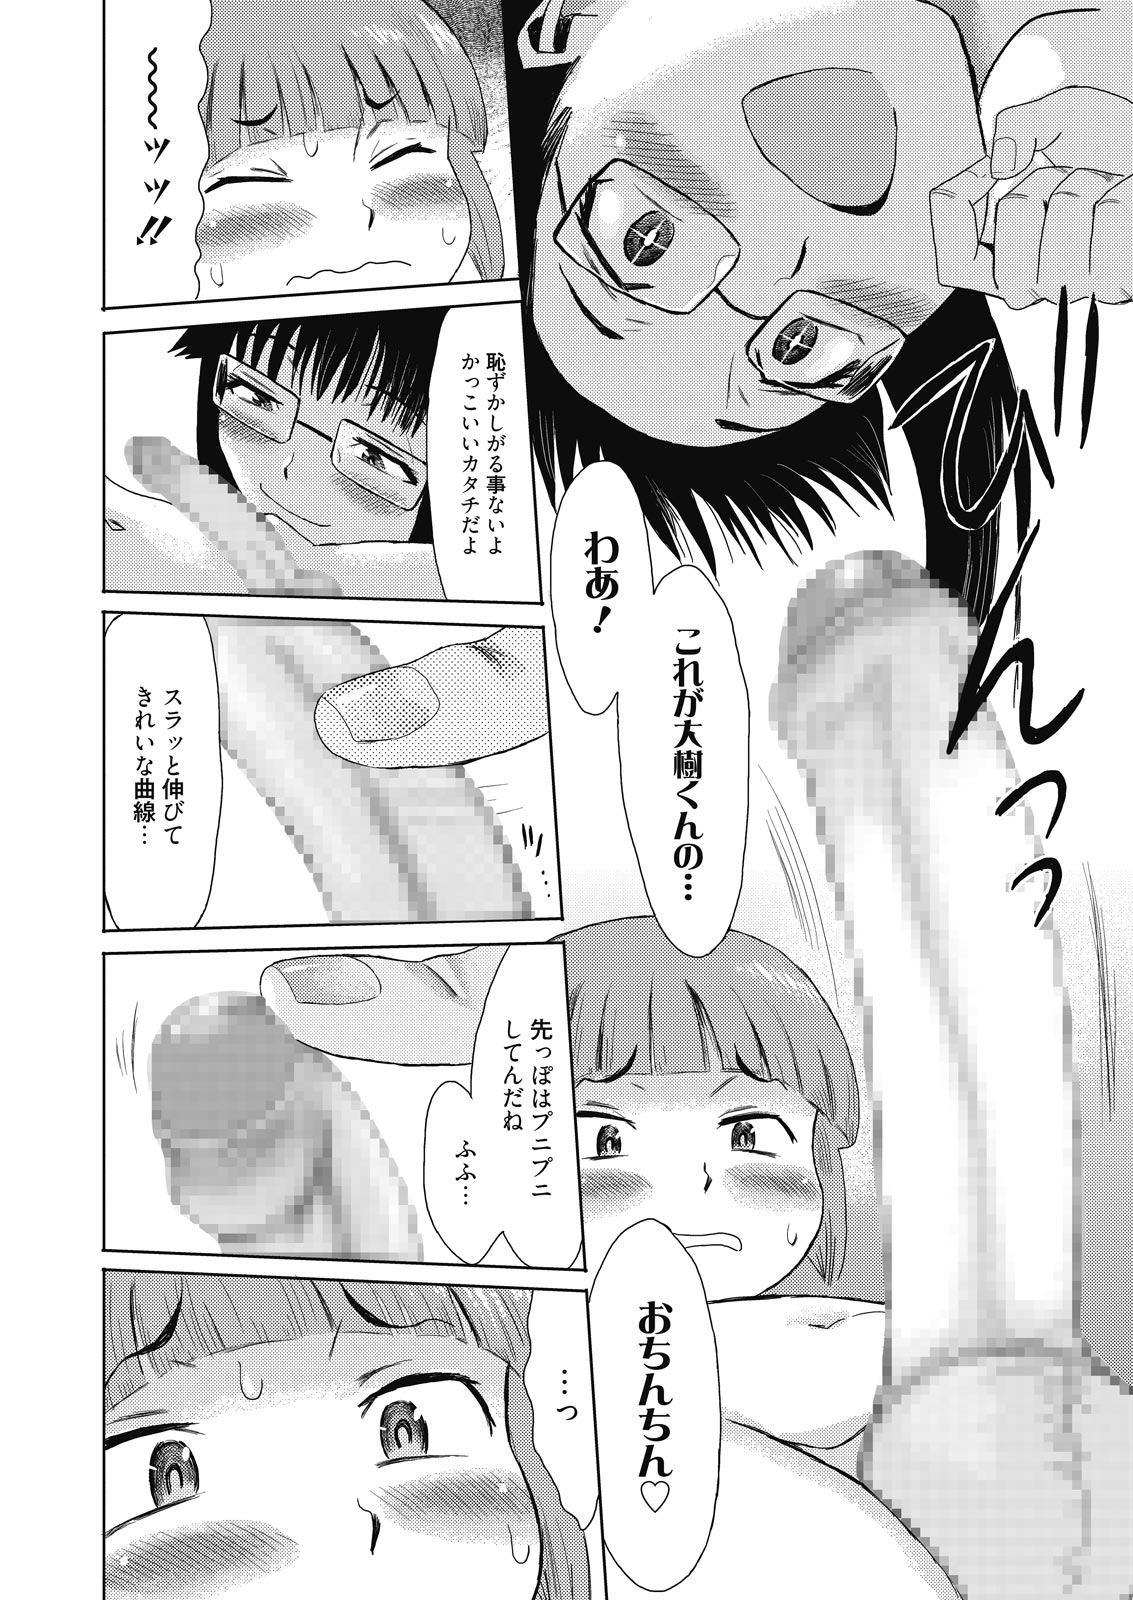 web 漫画ばんがいち Vol.8